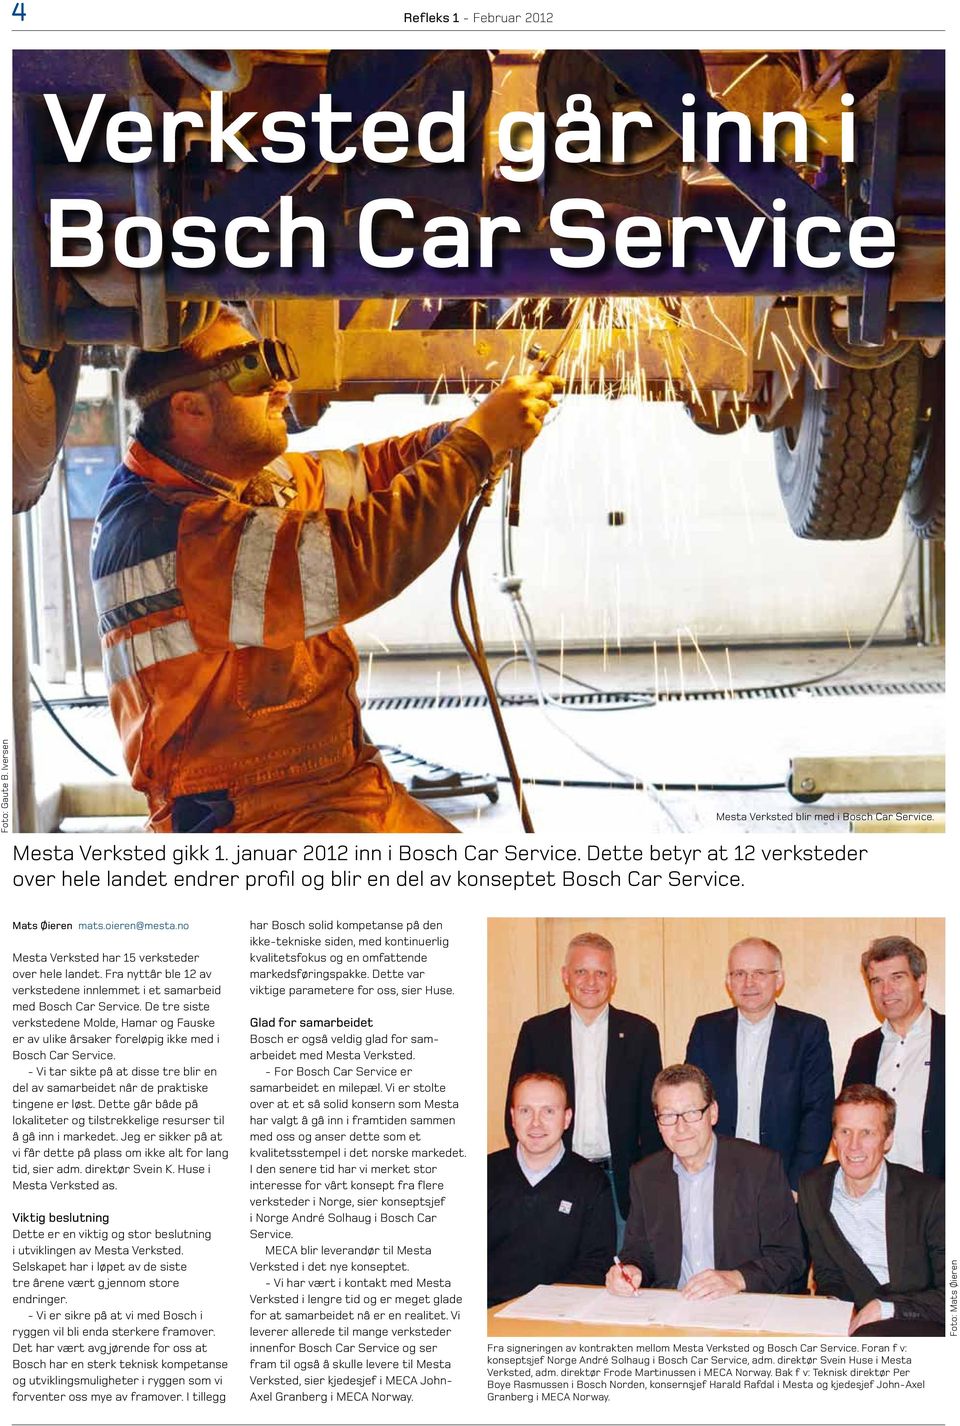 Fra nyttår ble 12 av verkstedene innlemmet i et samarbeid med Bosch Car Service. De tre siste verkstedene Molde, Hamar og Fauske er av ulike årsaker foreløpig ikke med i Bosch Car Service.